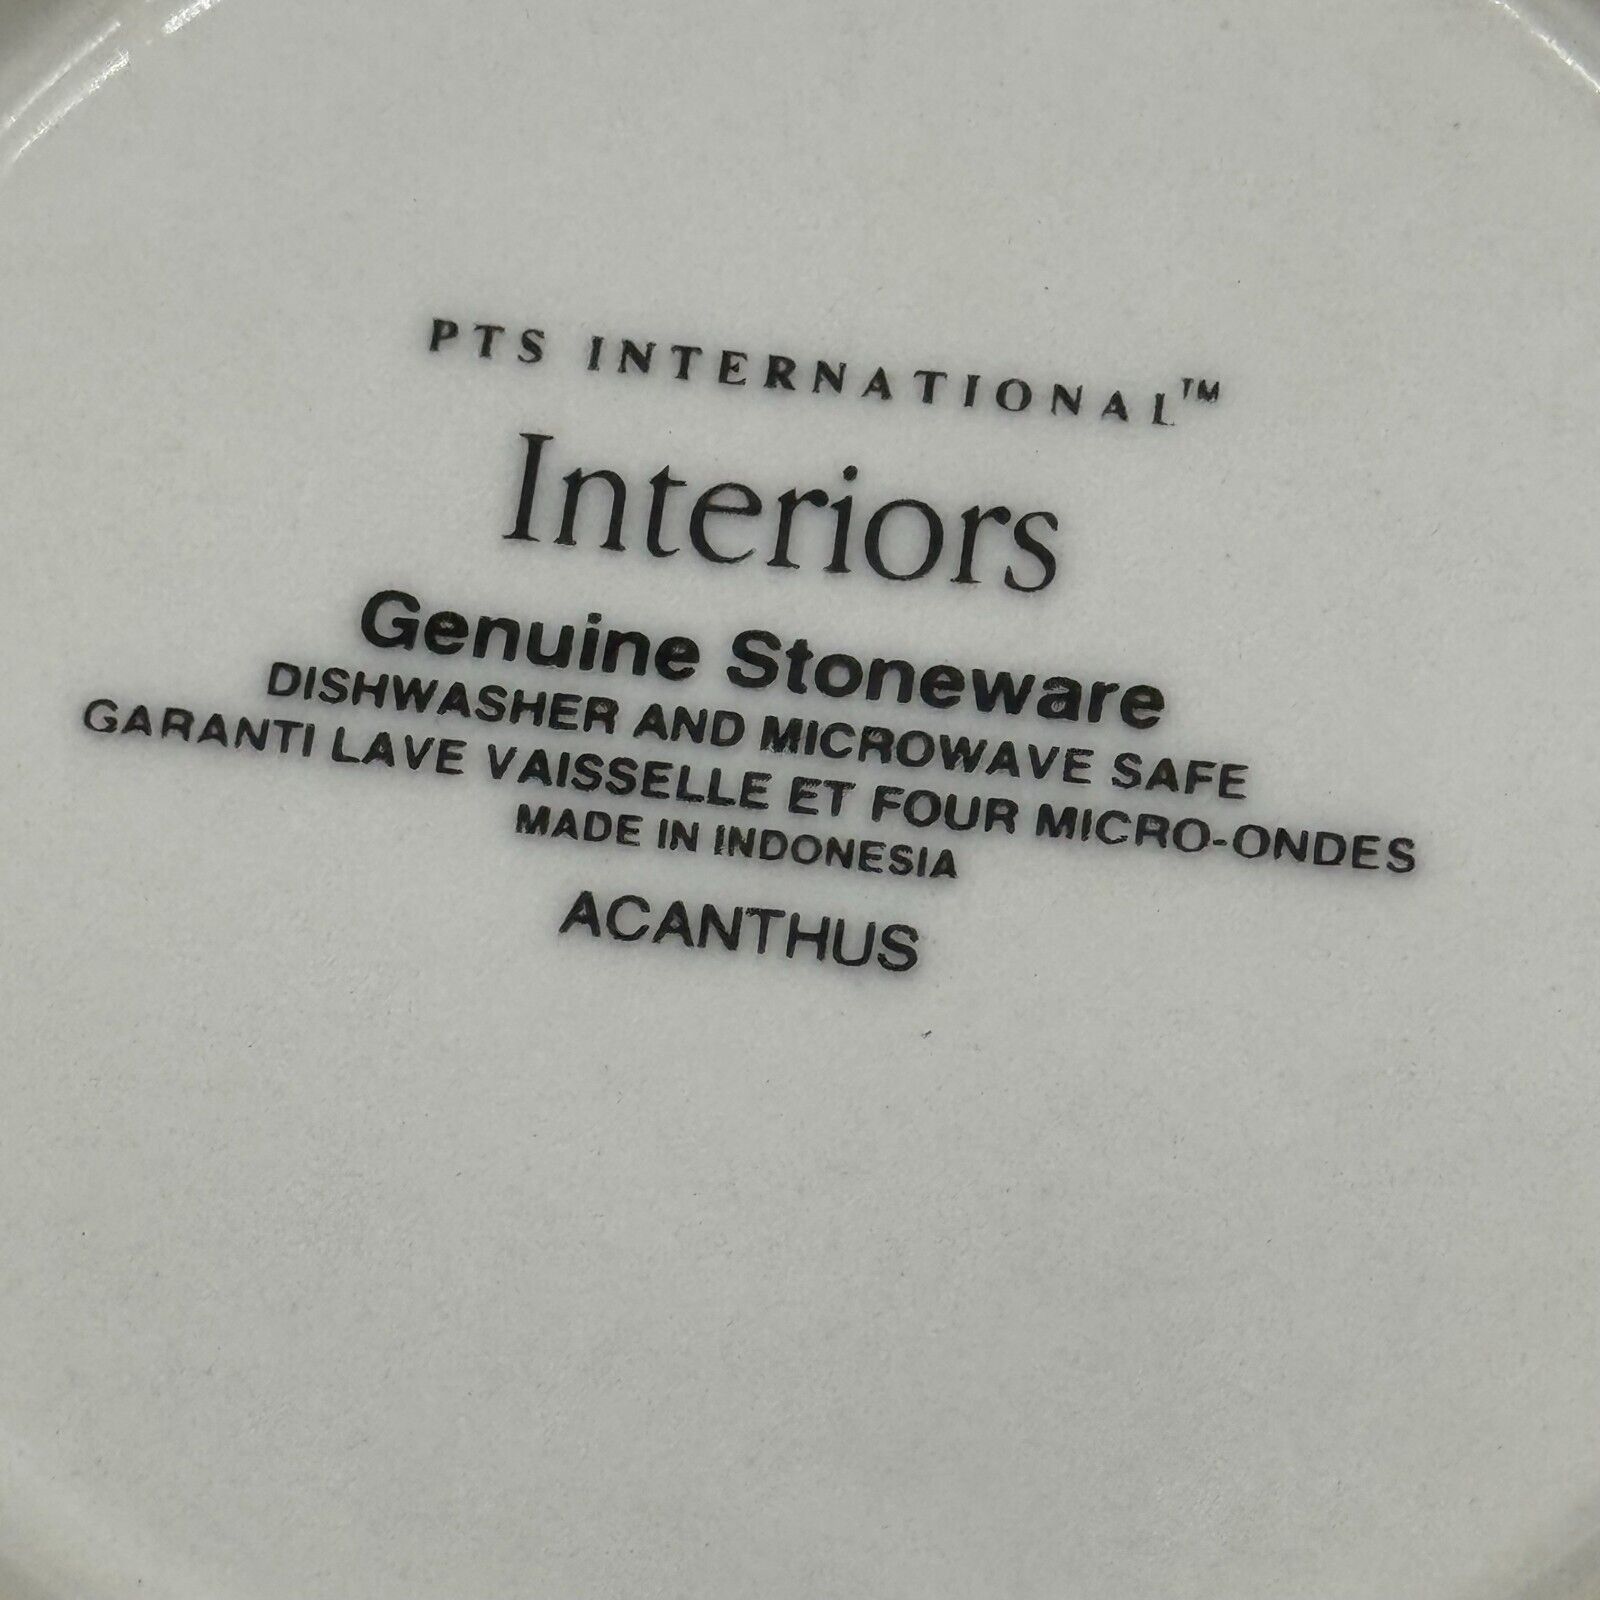 PTS International Interiors-Acanthus-Mug and Saucer Set